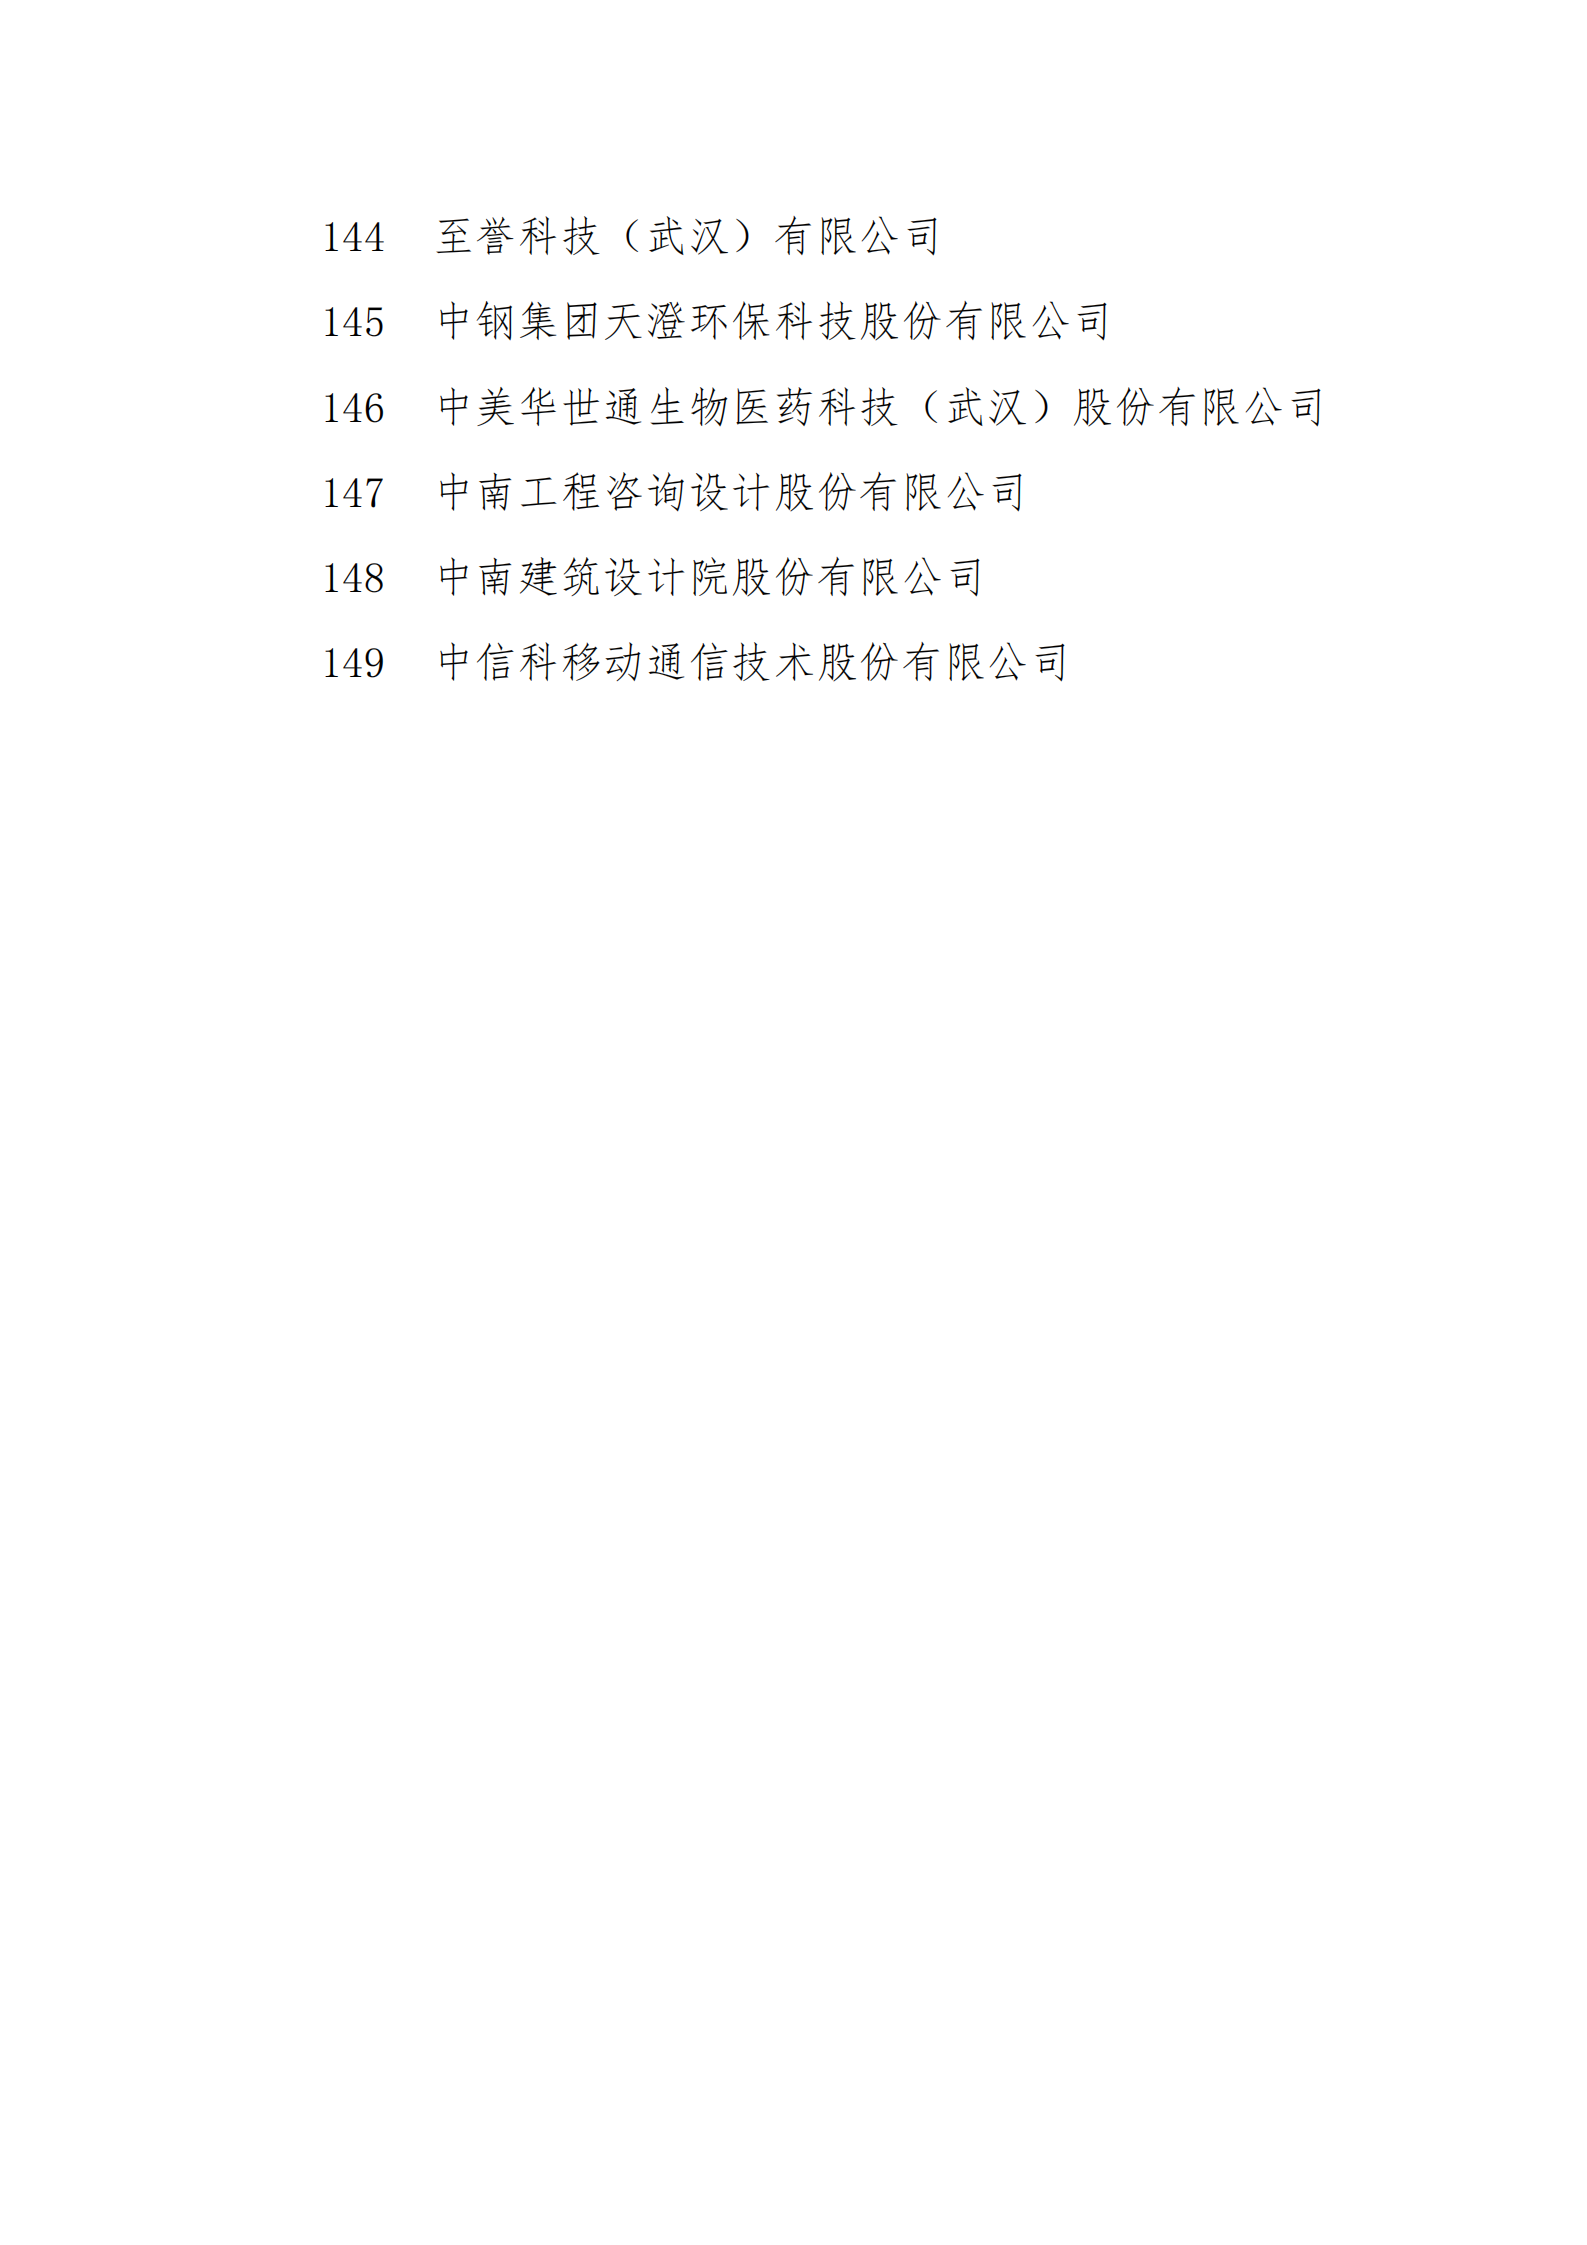 附件1：拟报2021年武汉市上市后备 “金种子”企业名单_07.png